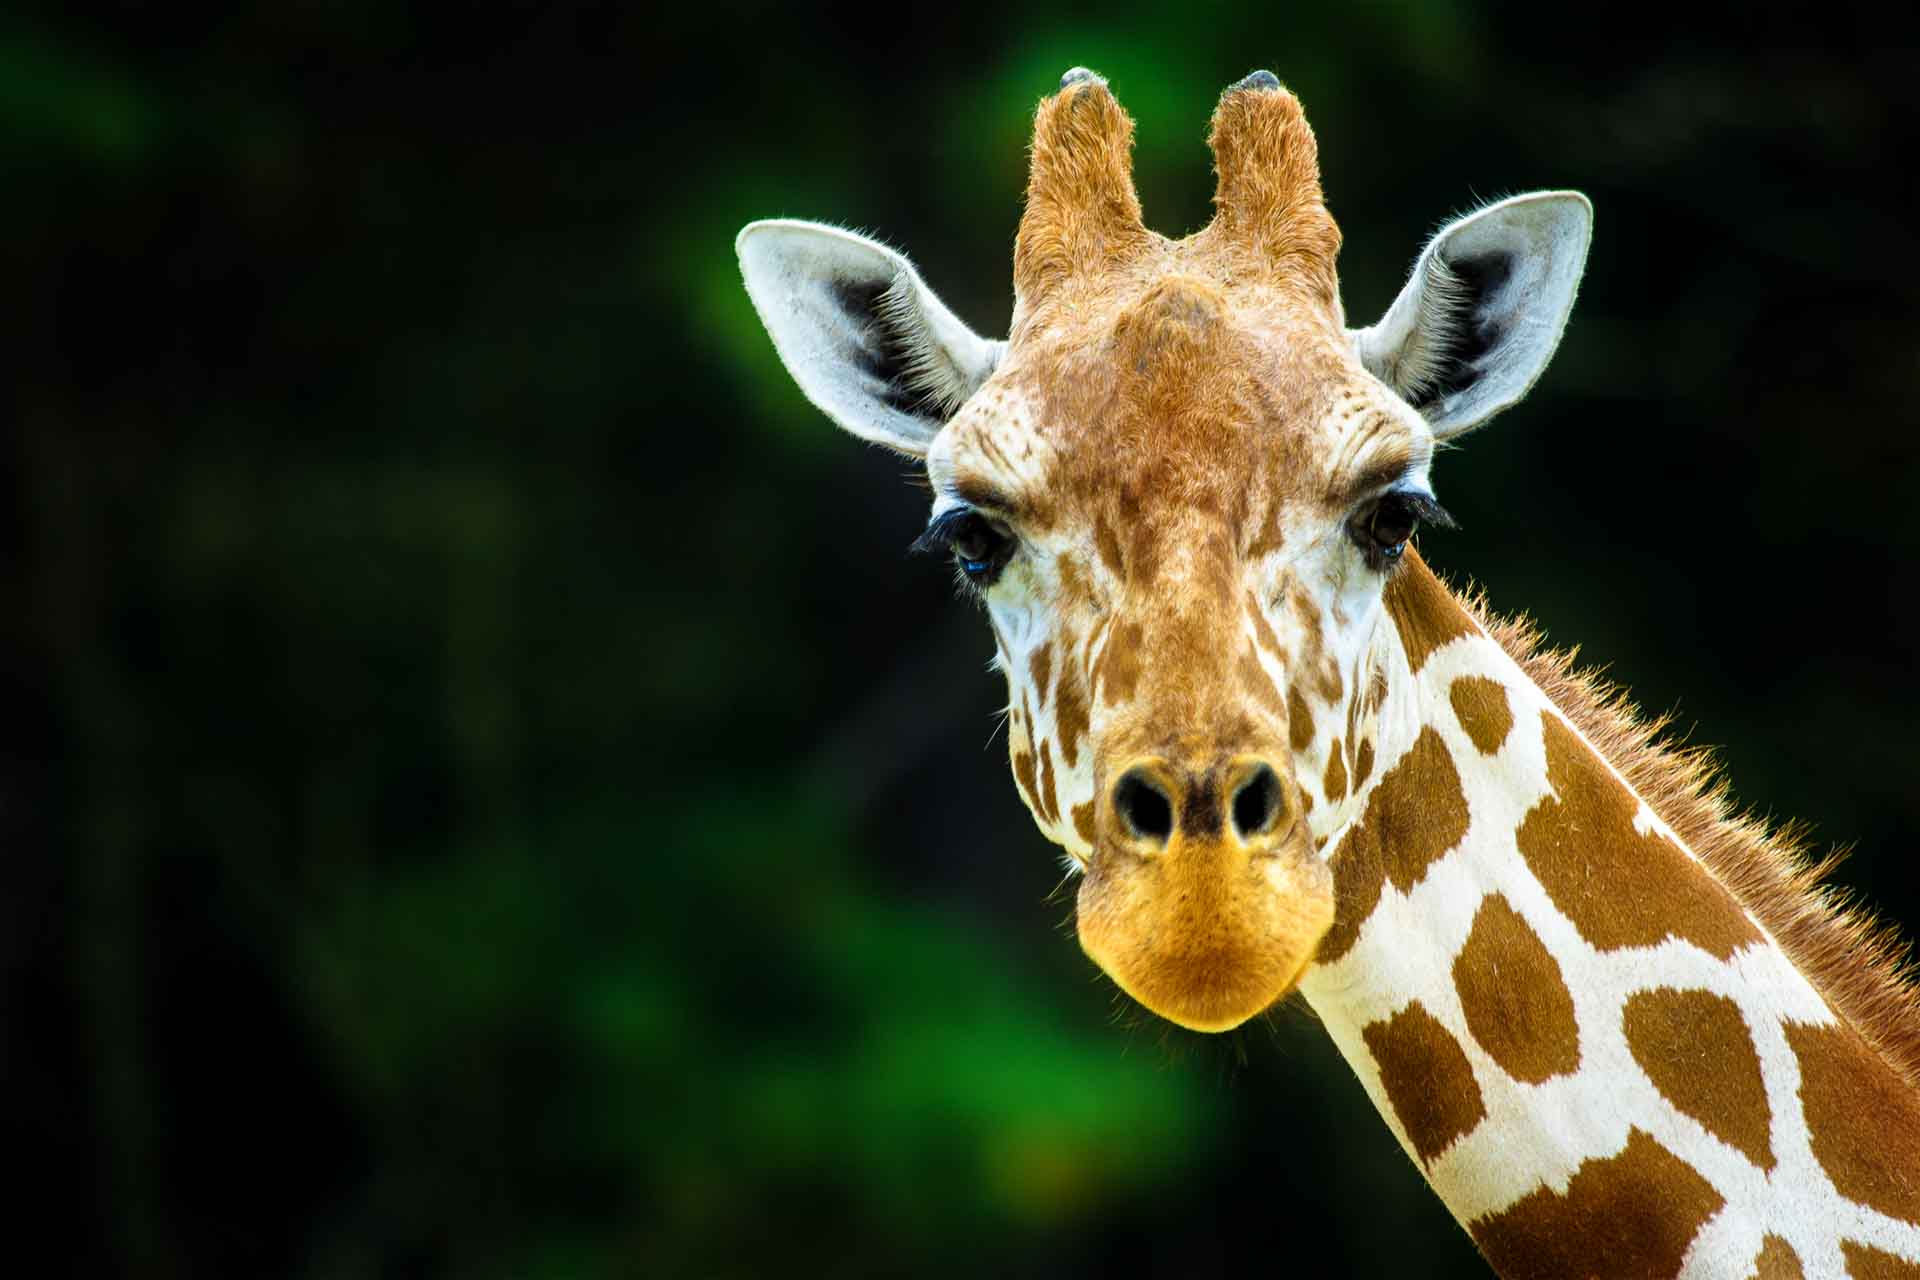 Giraffe looking directly at camera